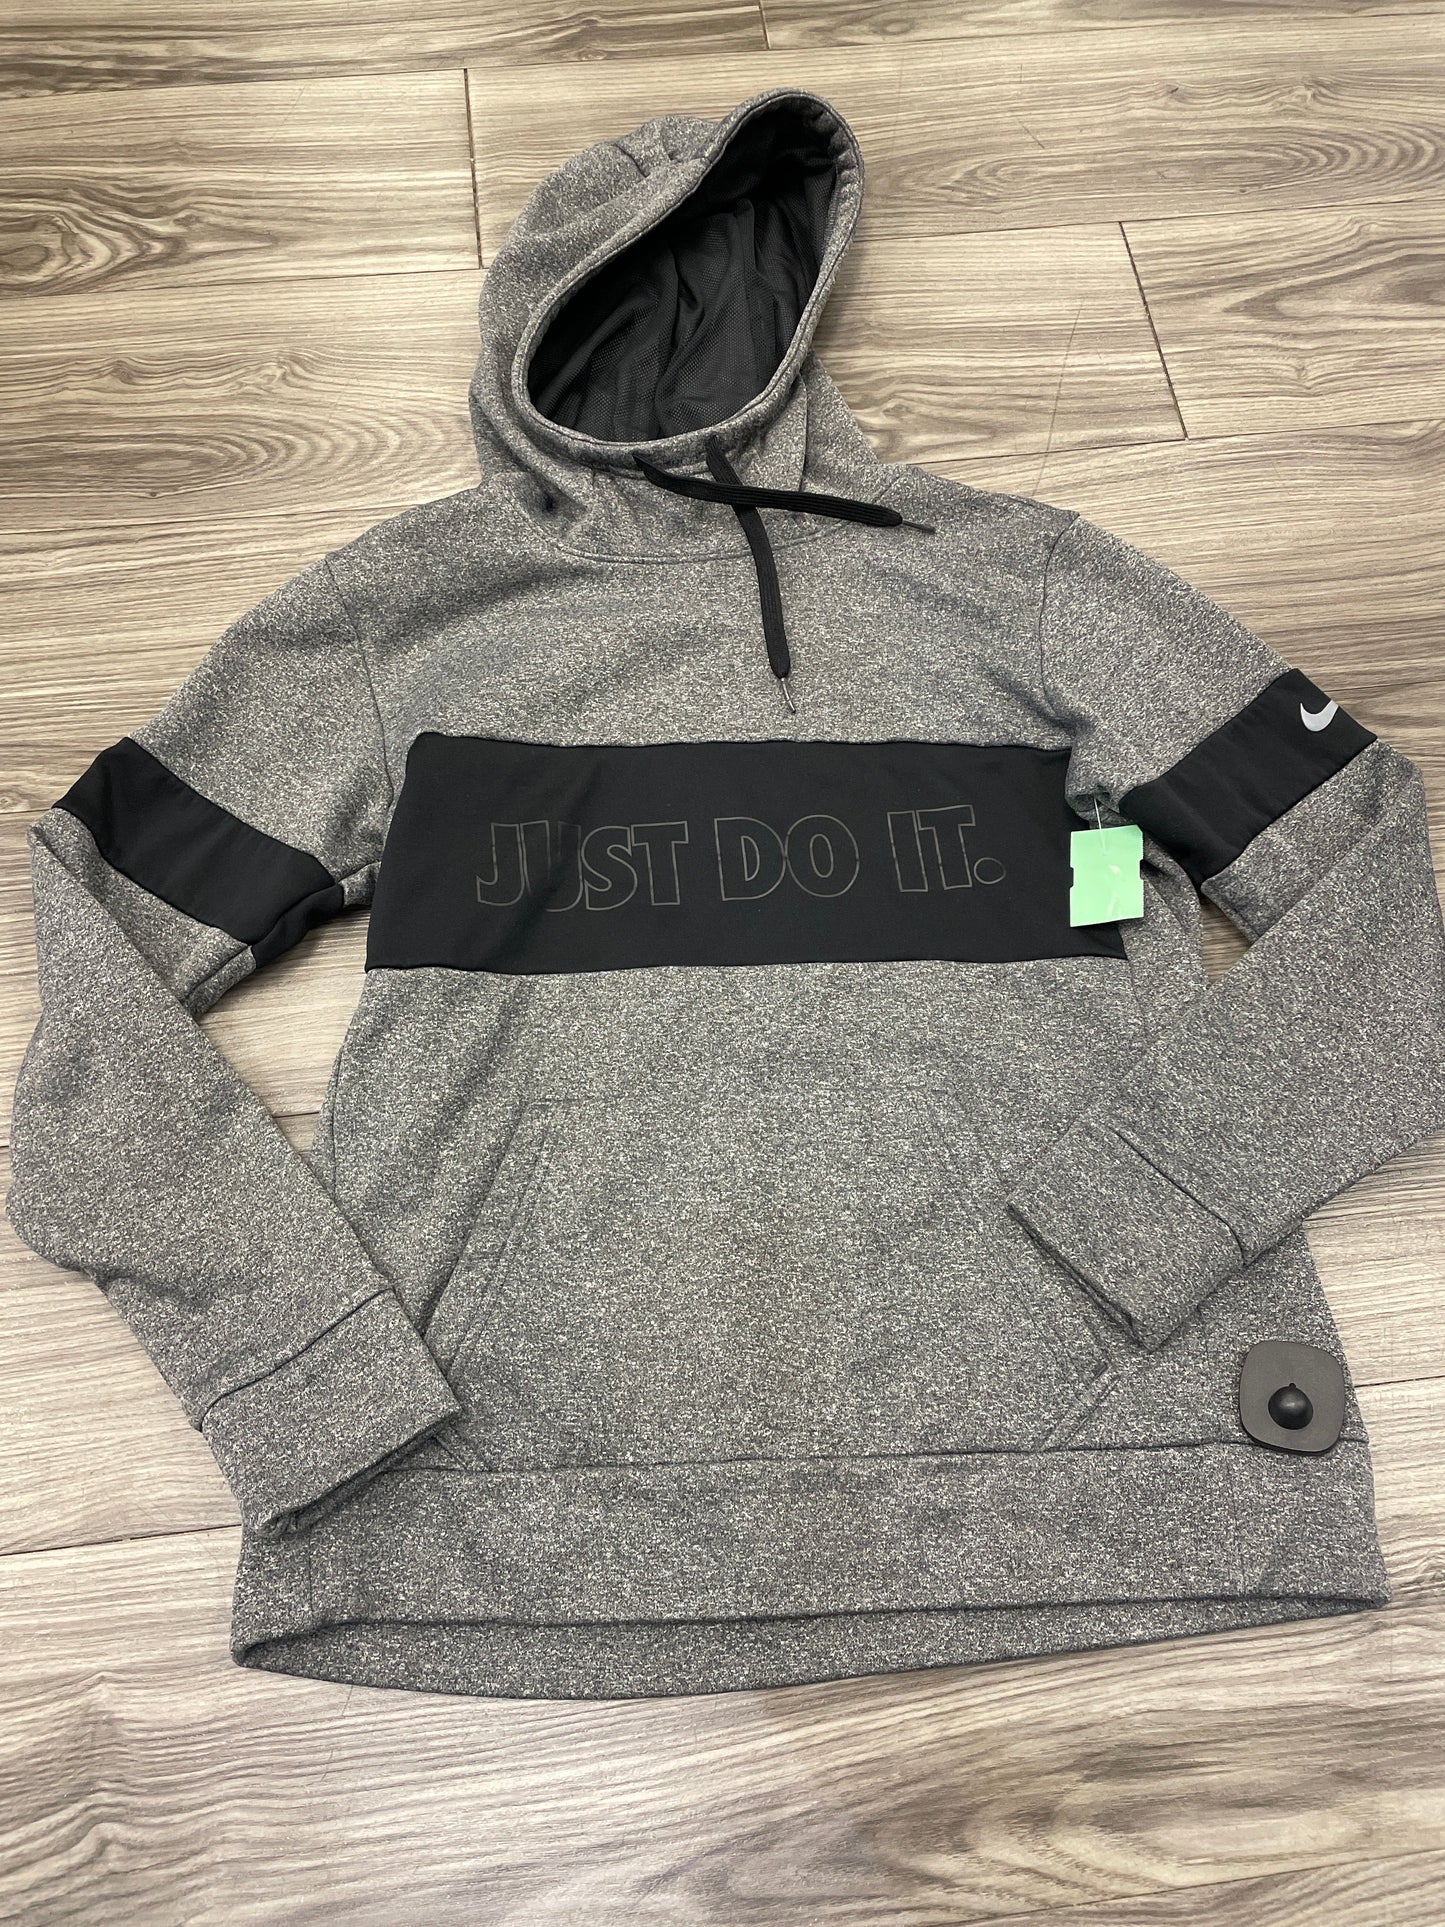 Black & Grey Athletic Sweatshirt Hoodie Nike, Size S